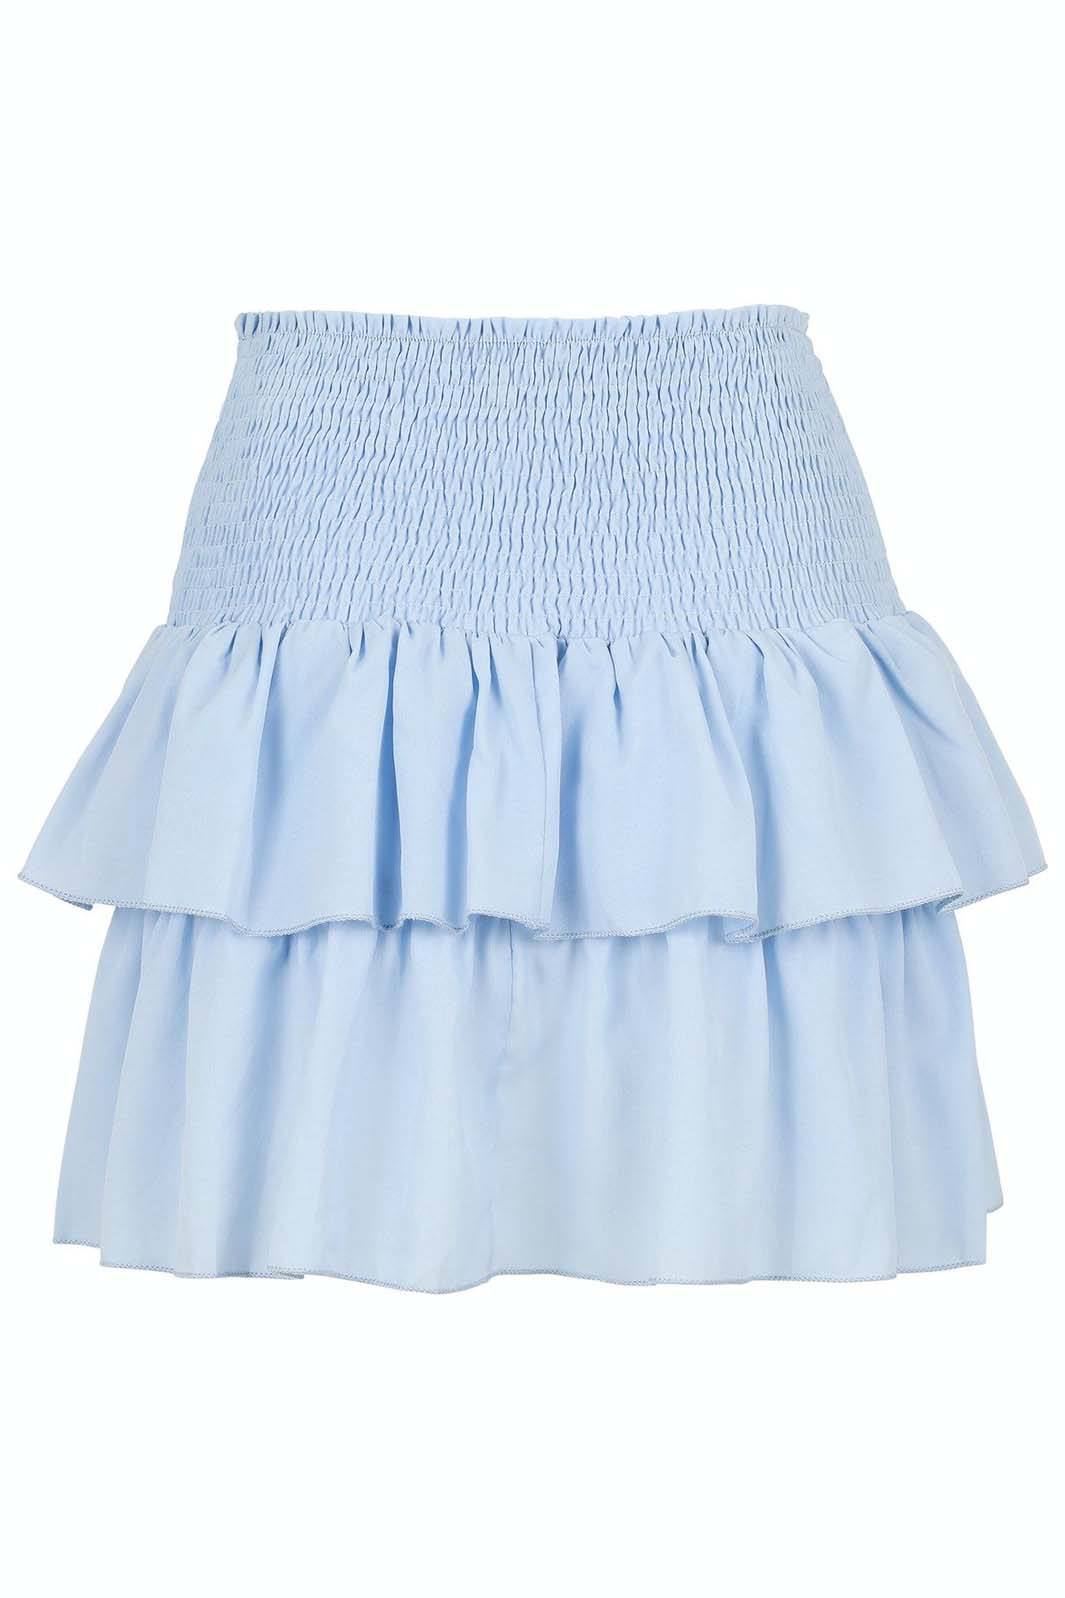 Neo Noir - Carin R Skirt - Light Blue Nederdele 